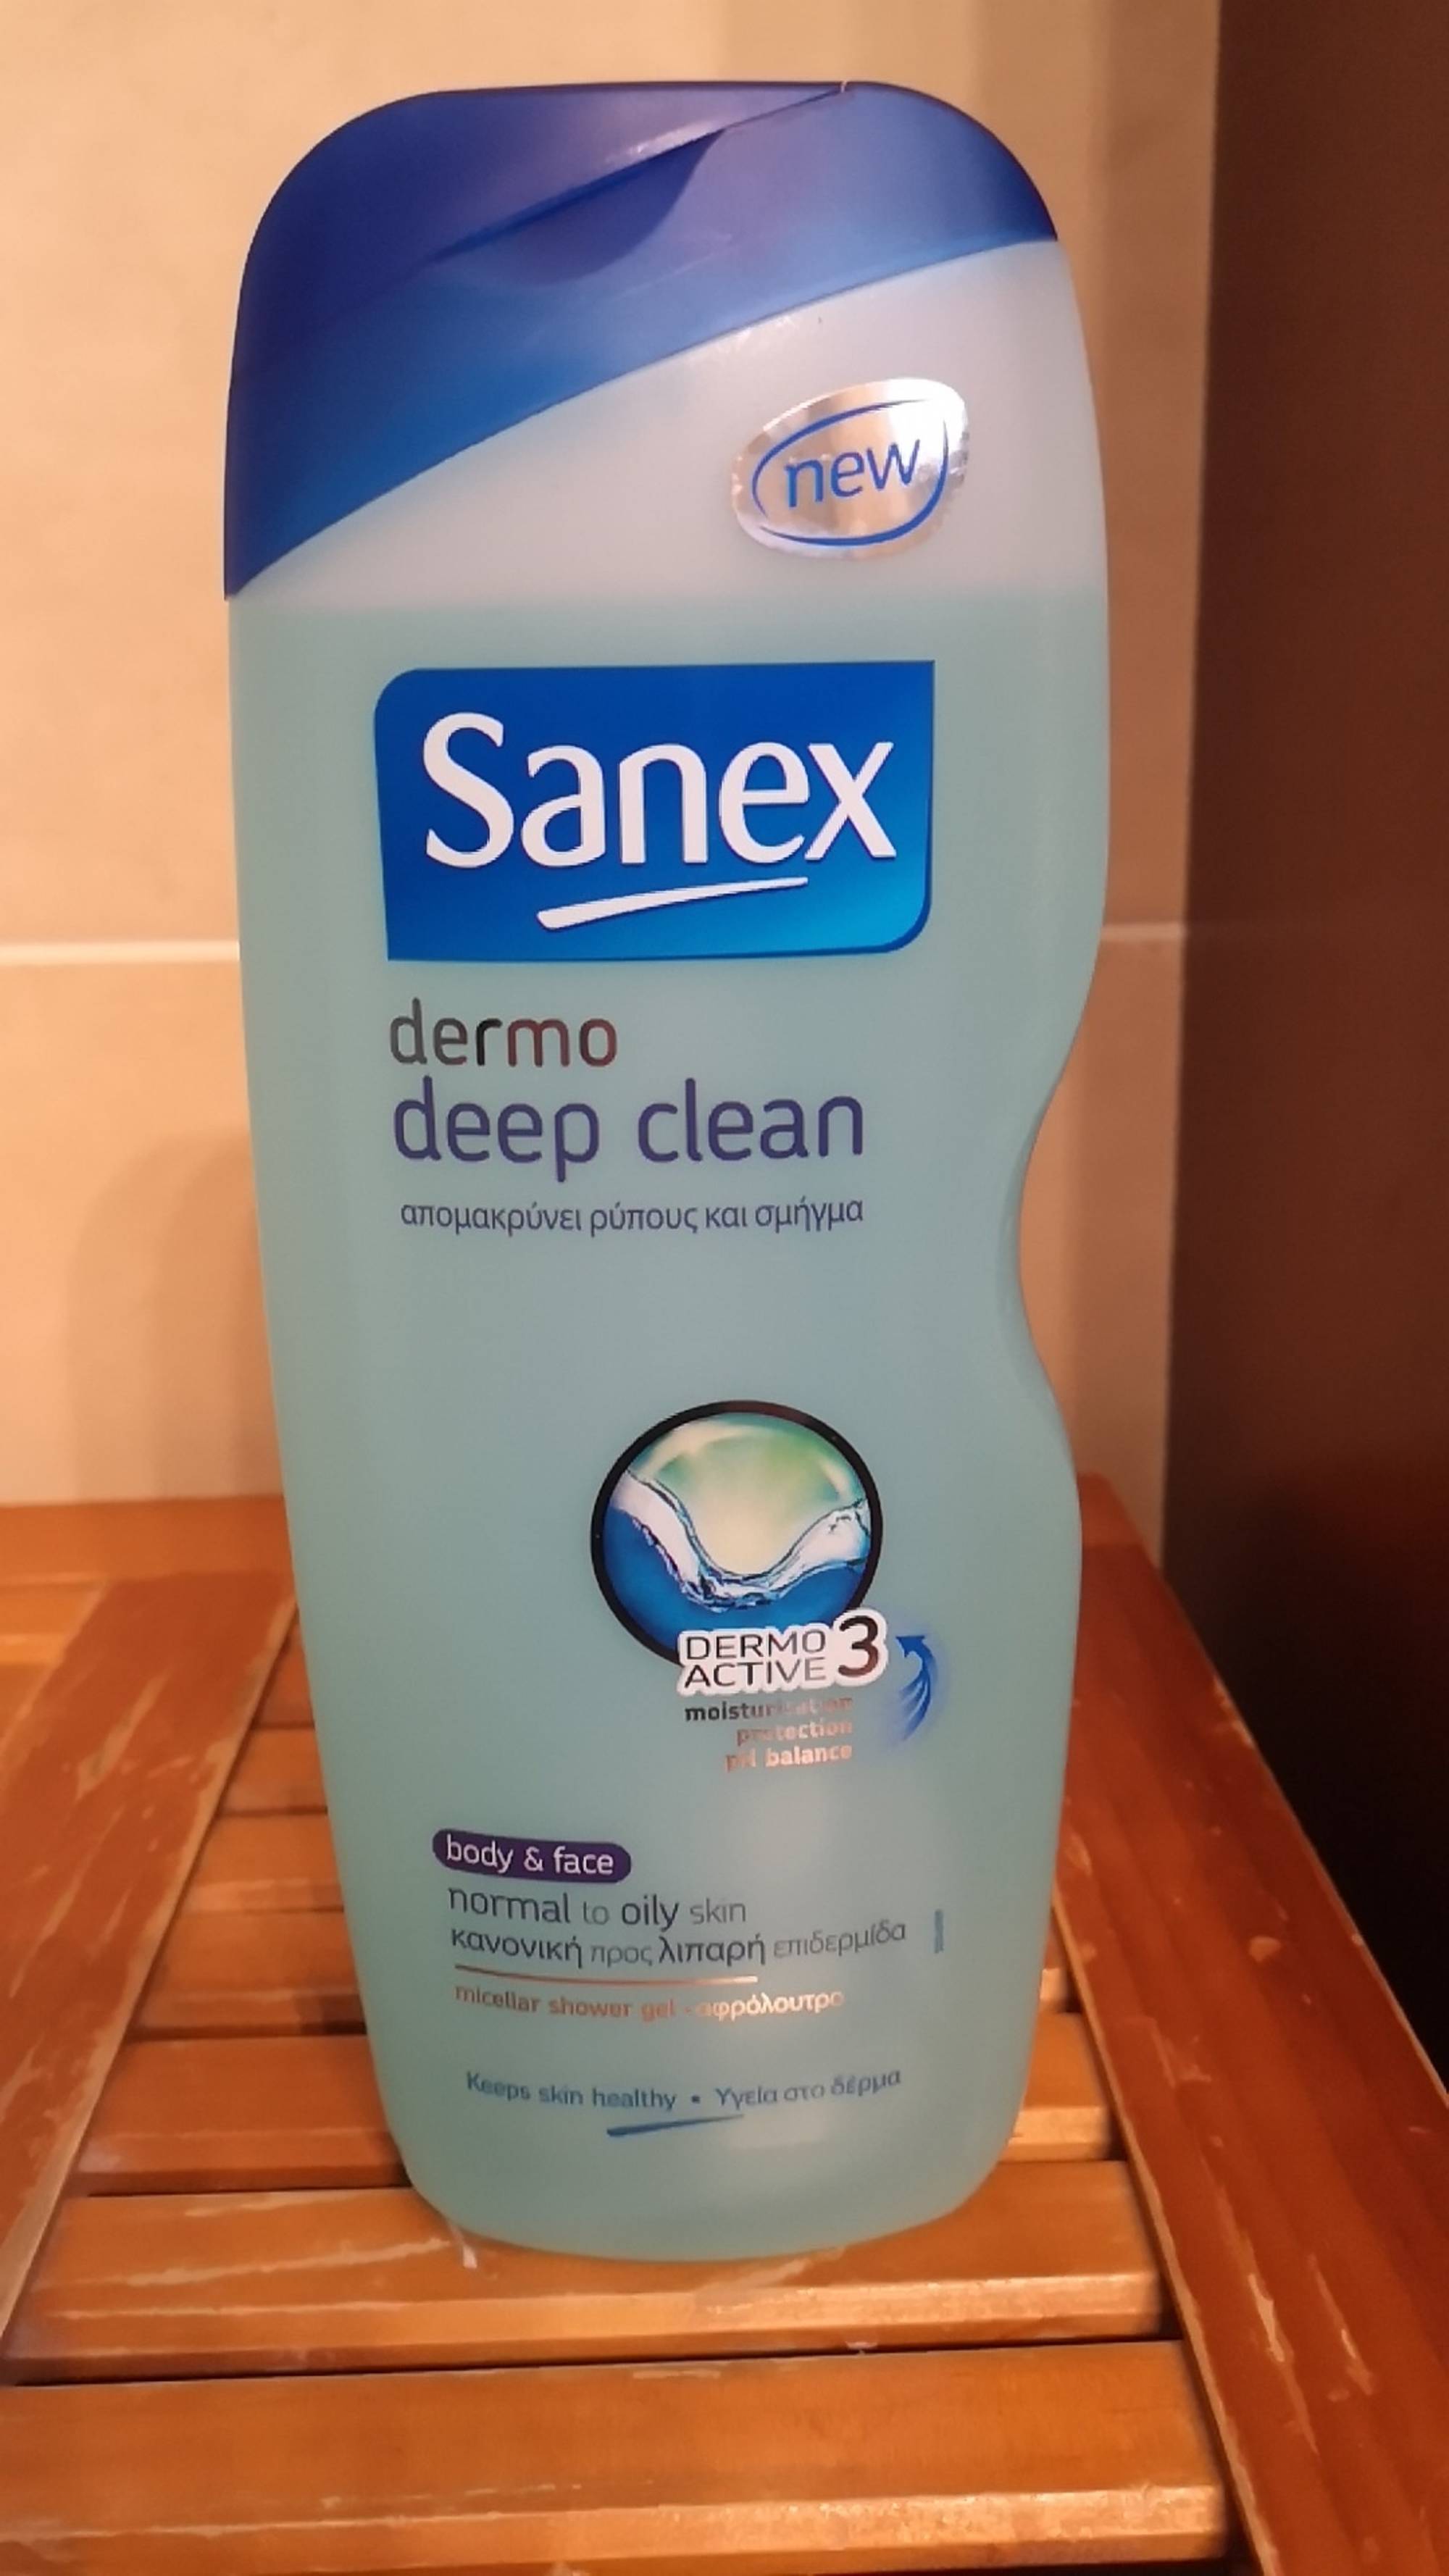 SANEX - Dermo deep clean - Micellar shower gel